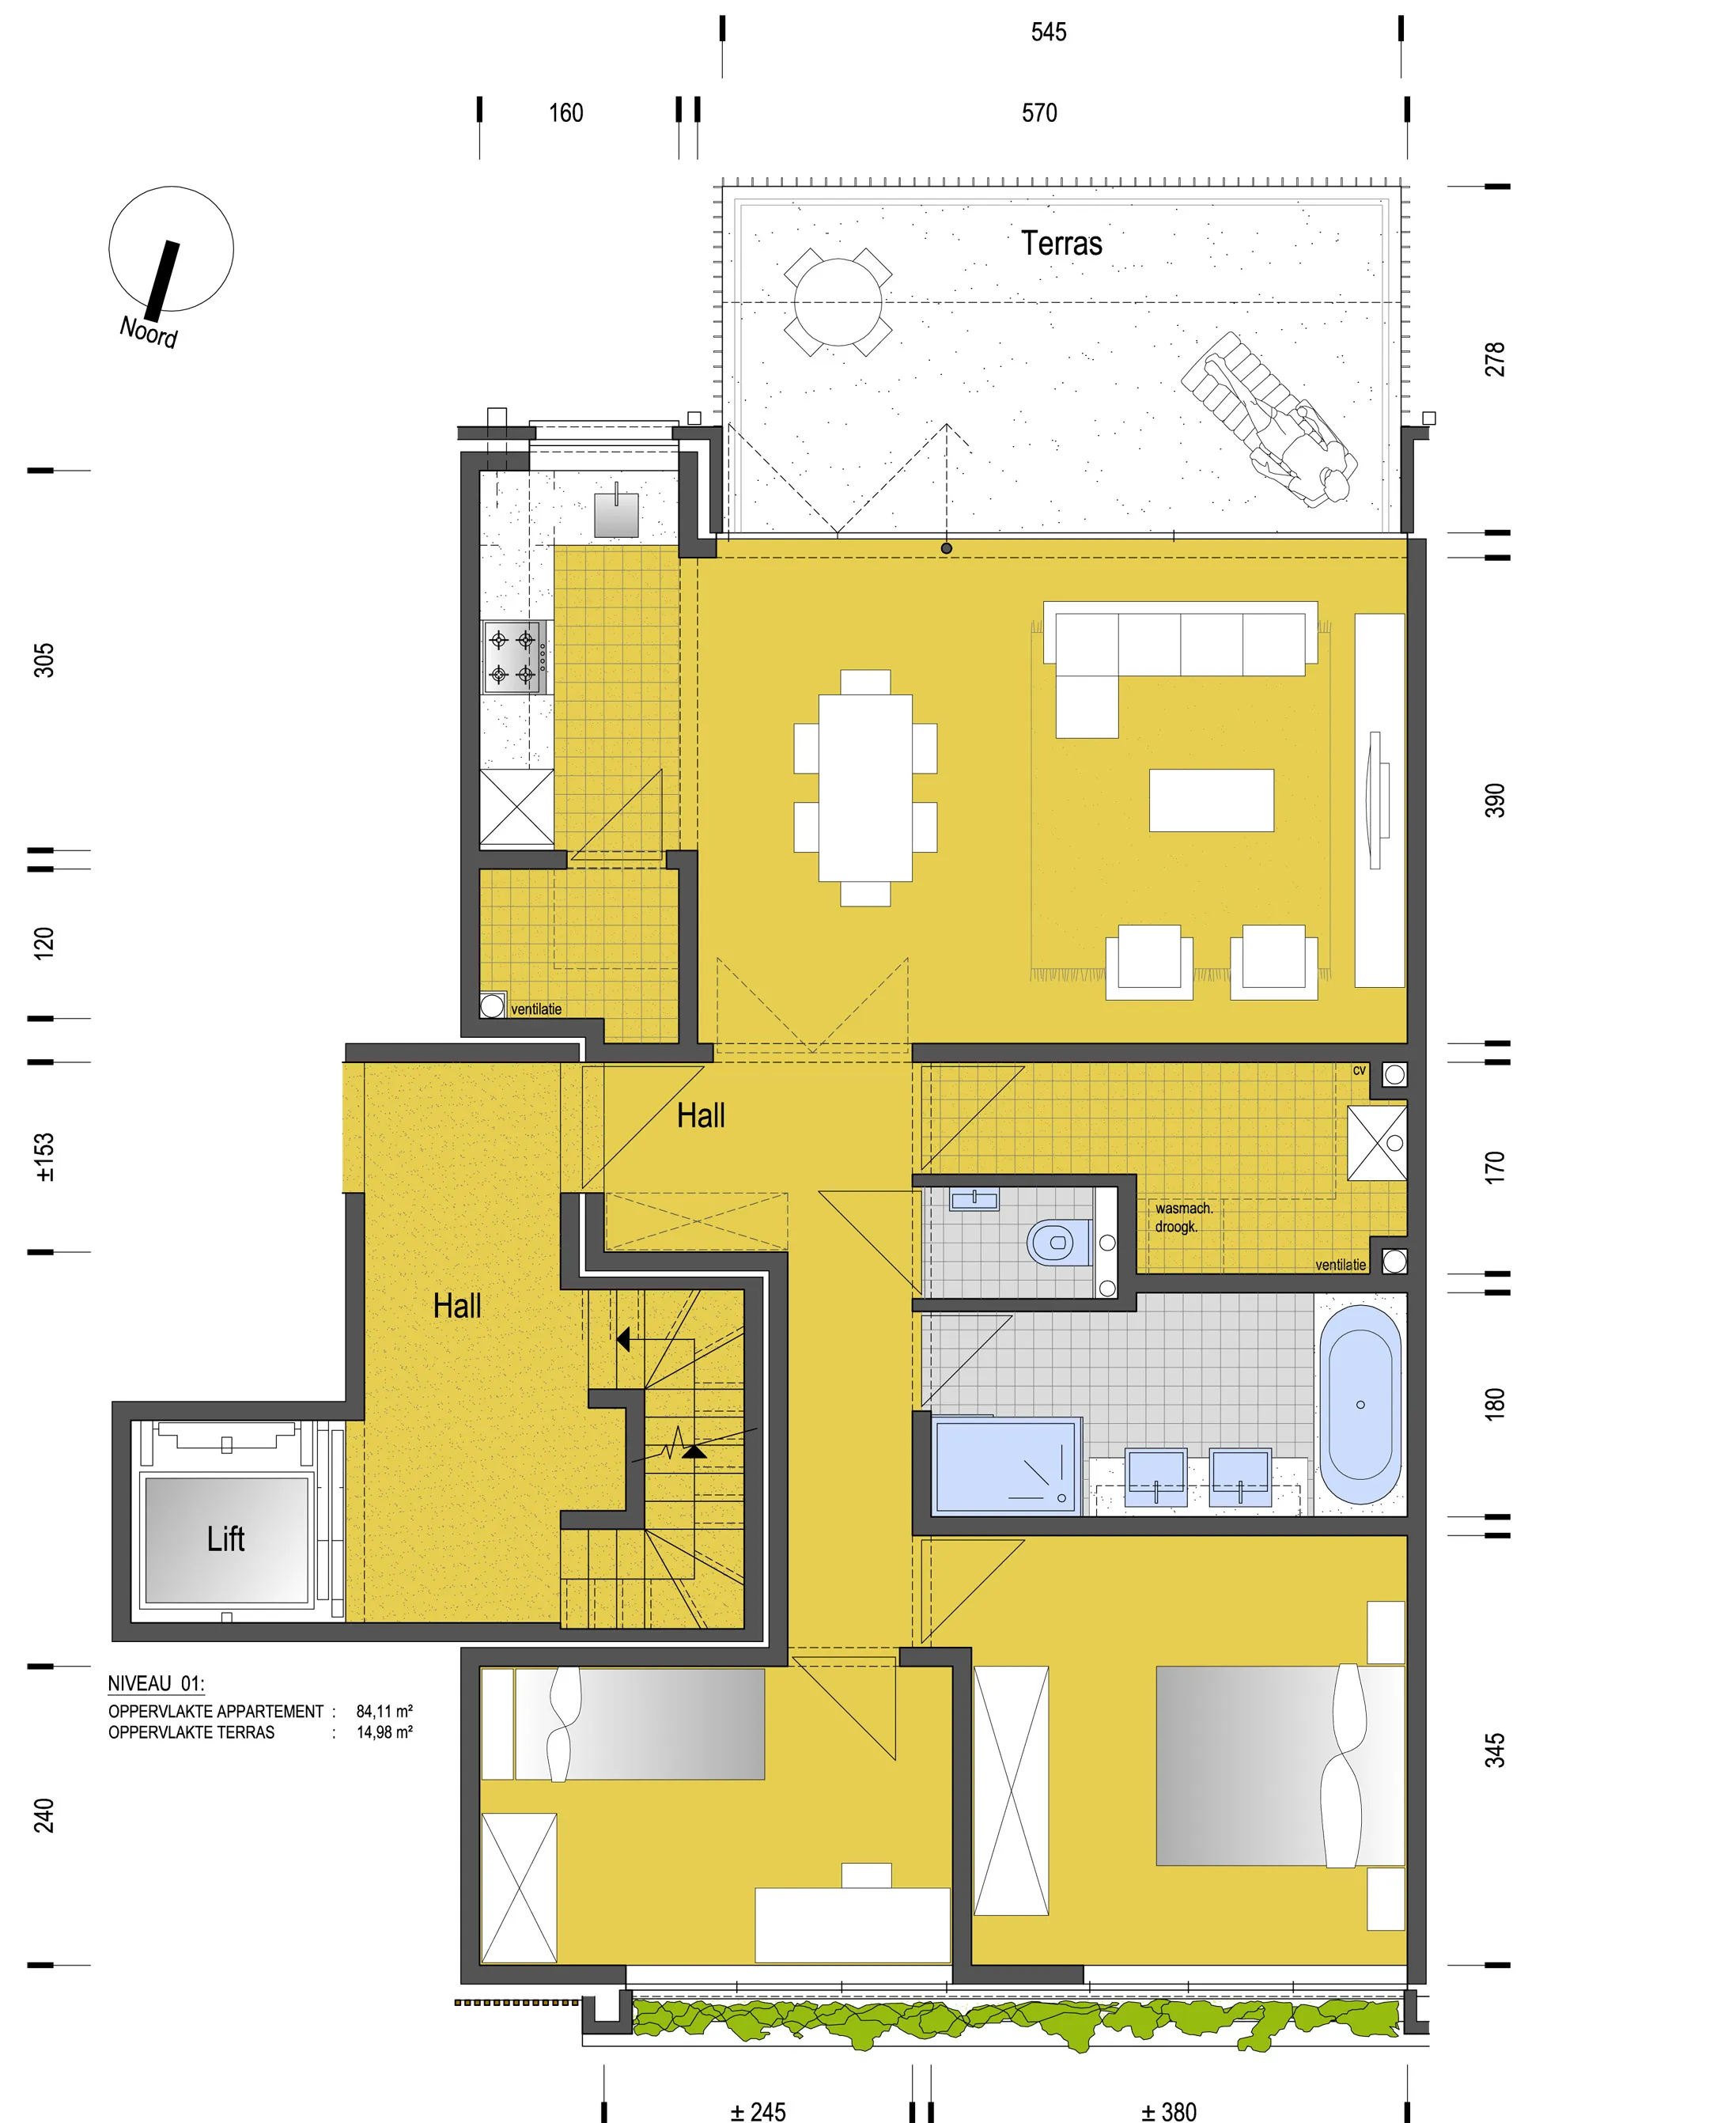 Nieuw appartement met terras (15m2), tuin en staanplaats